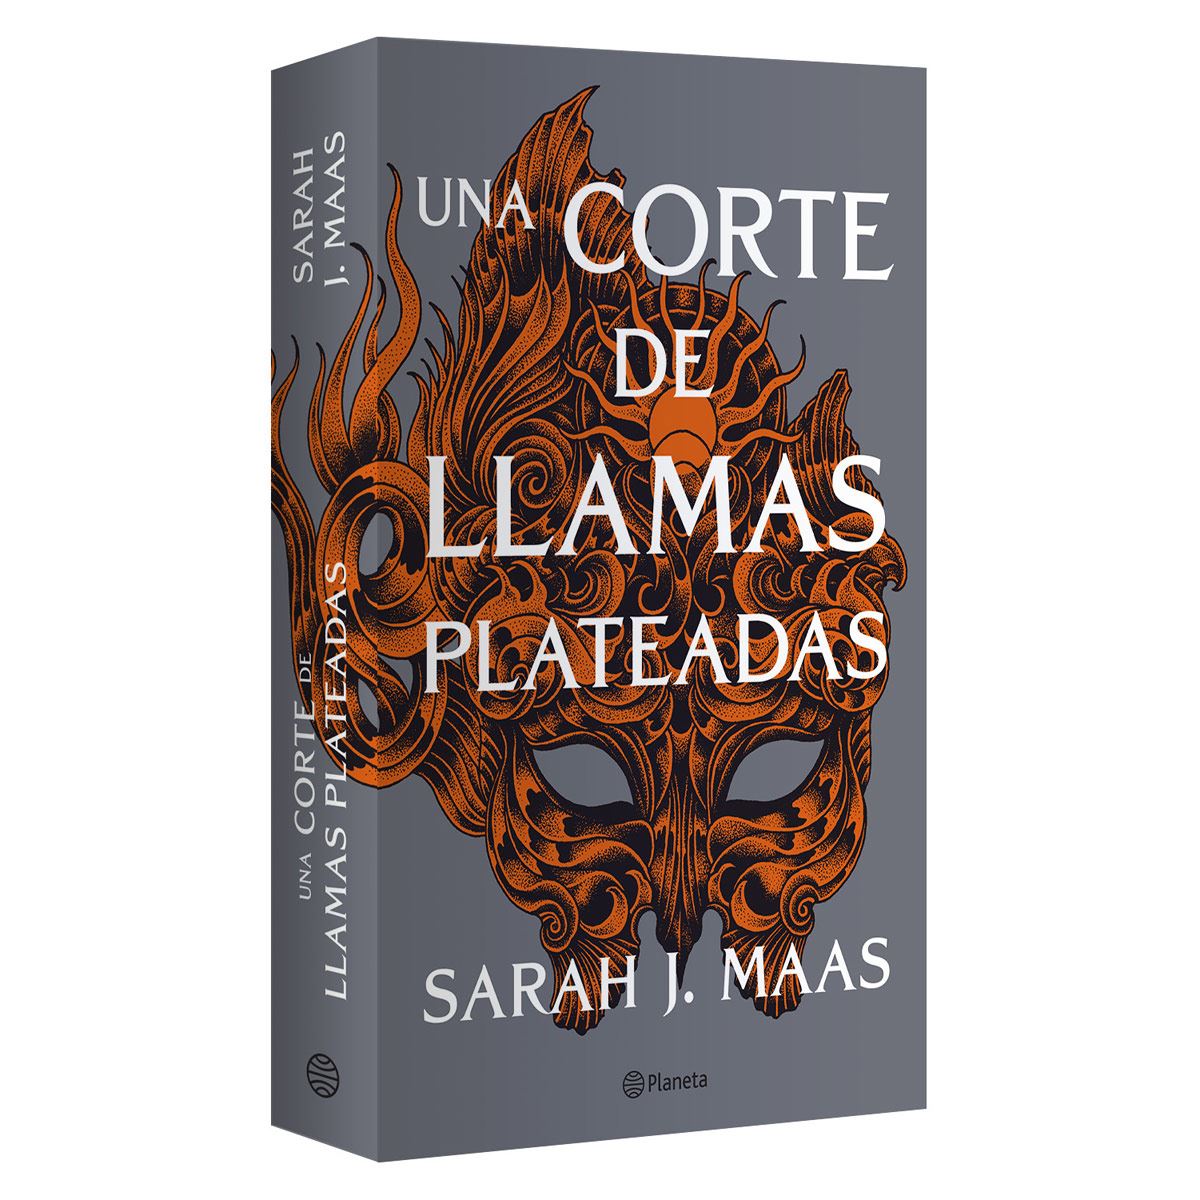 Libro de arte Nesta y Cassian Una corte de llamas plateadas -  México